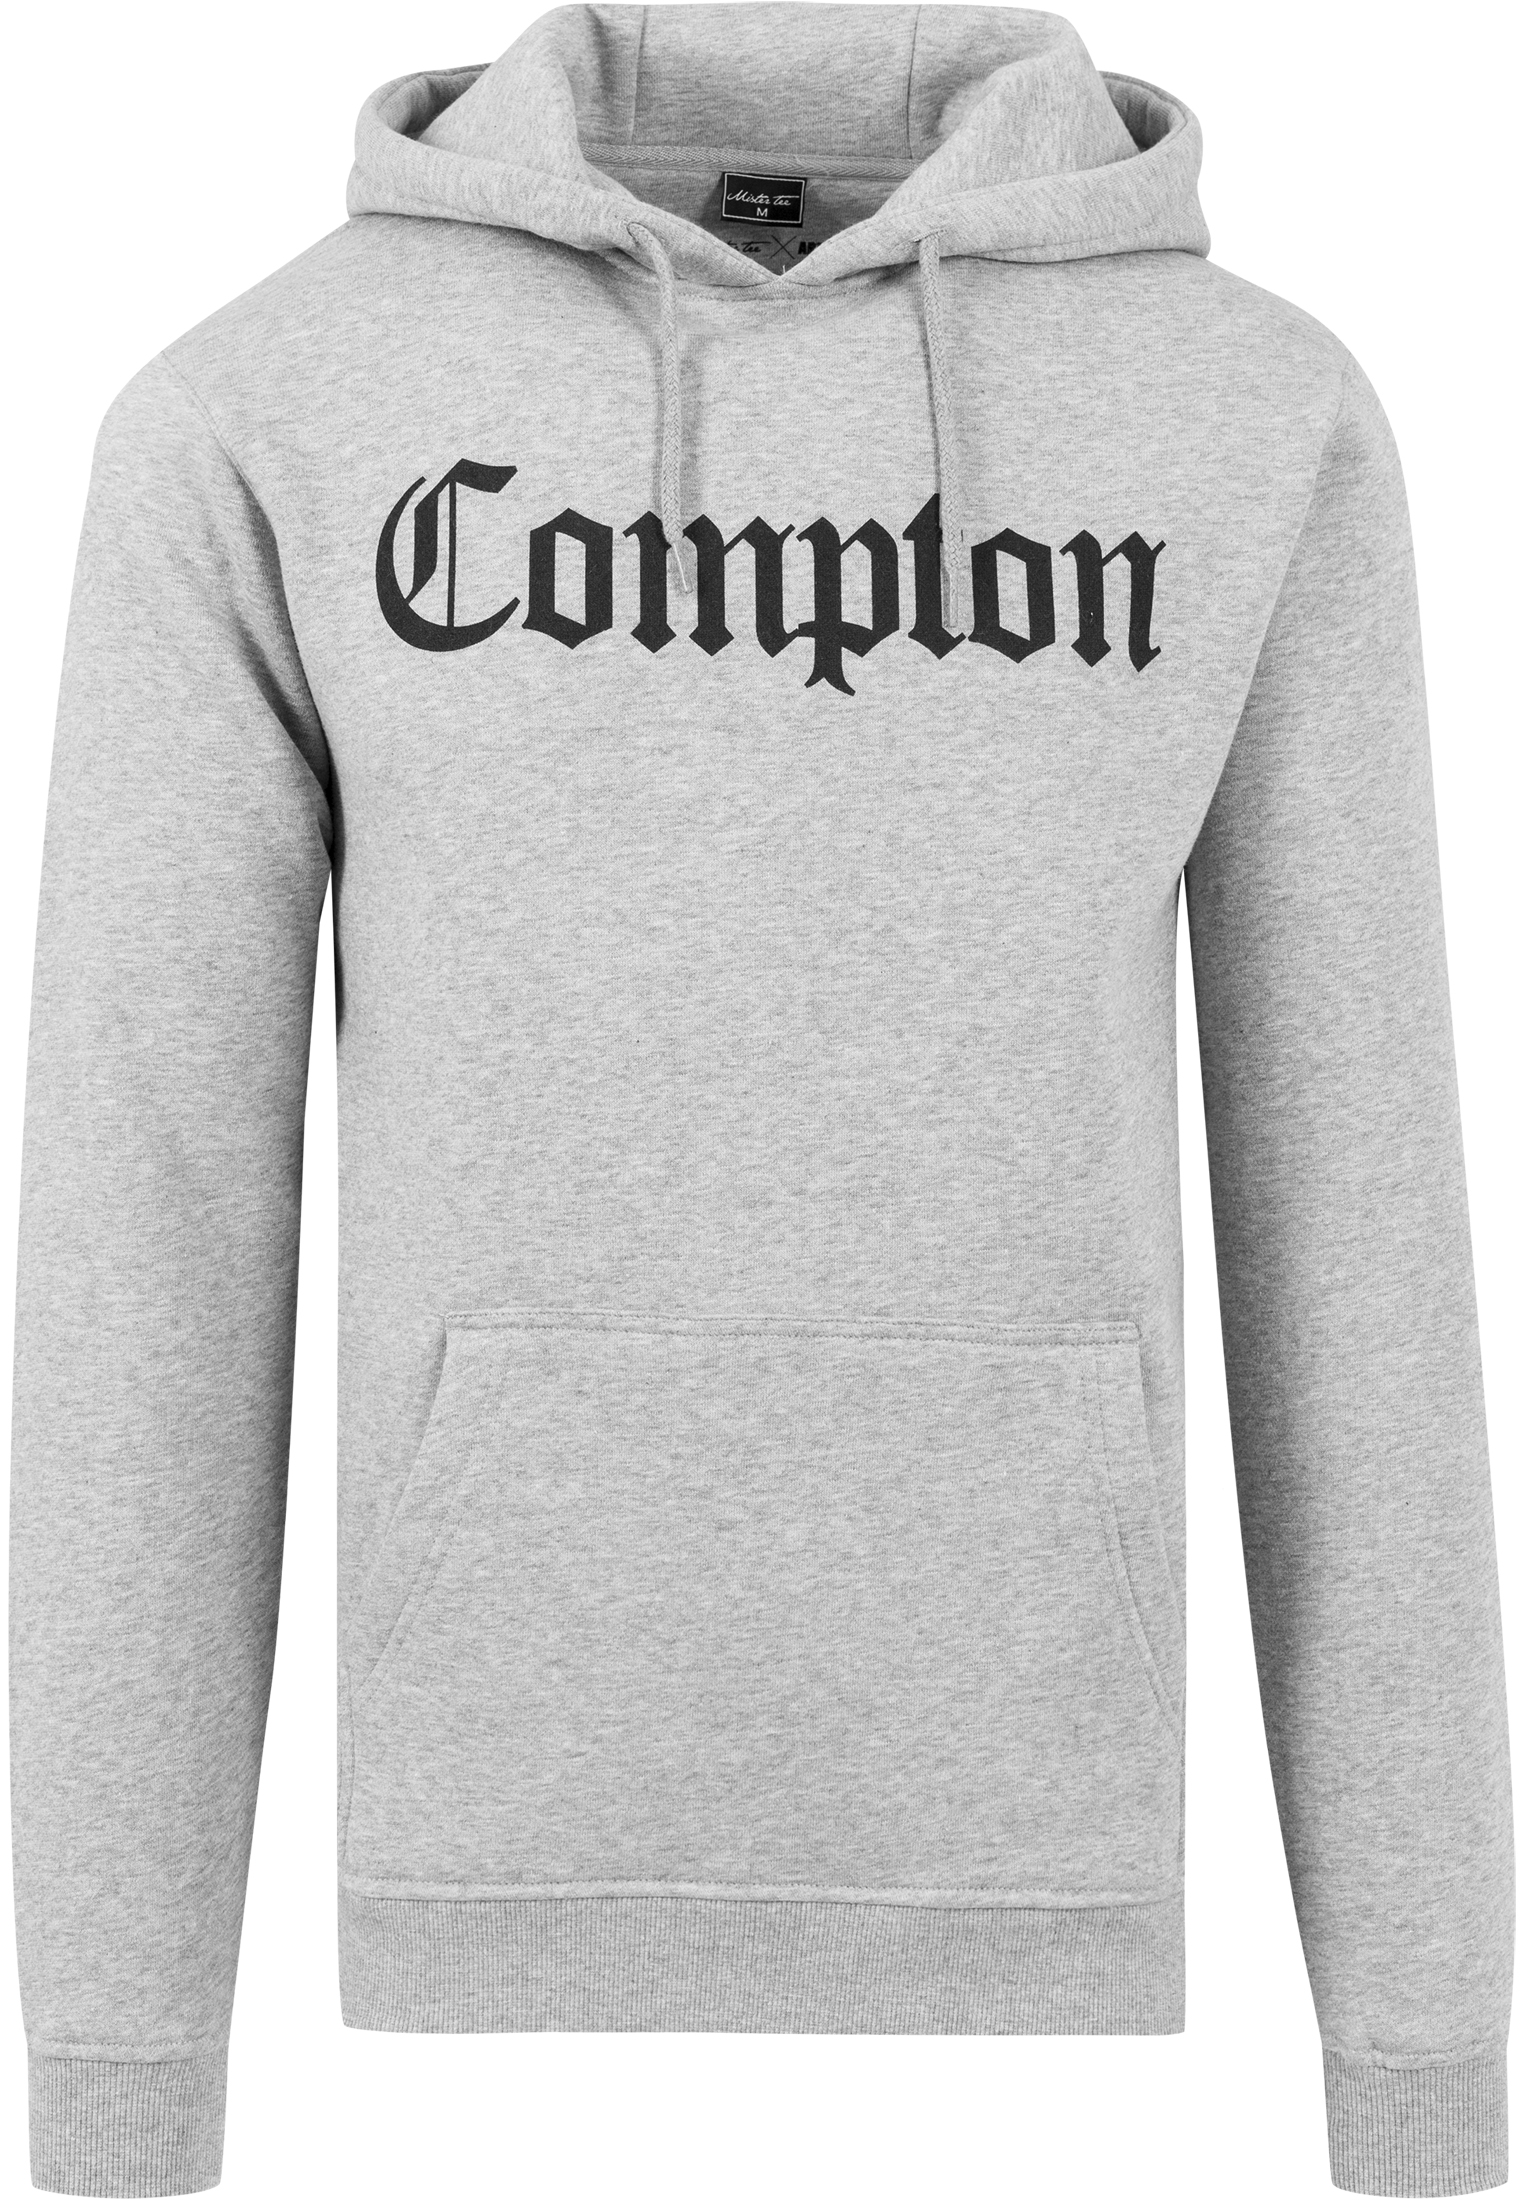 Compton Hoody-MT269